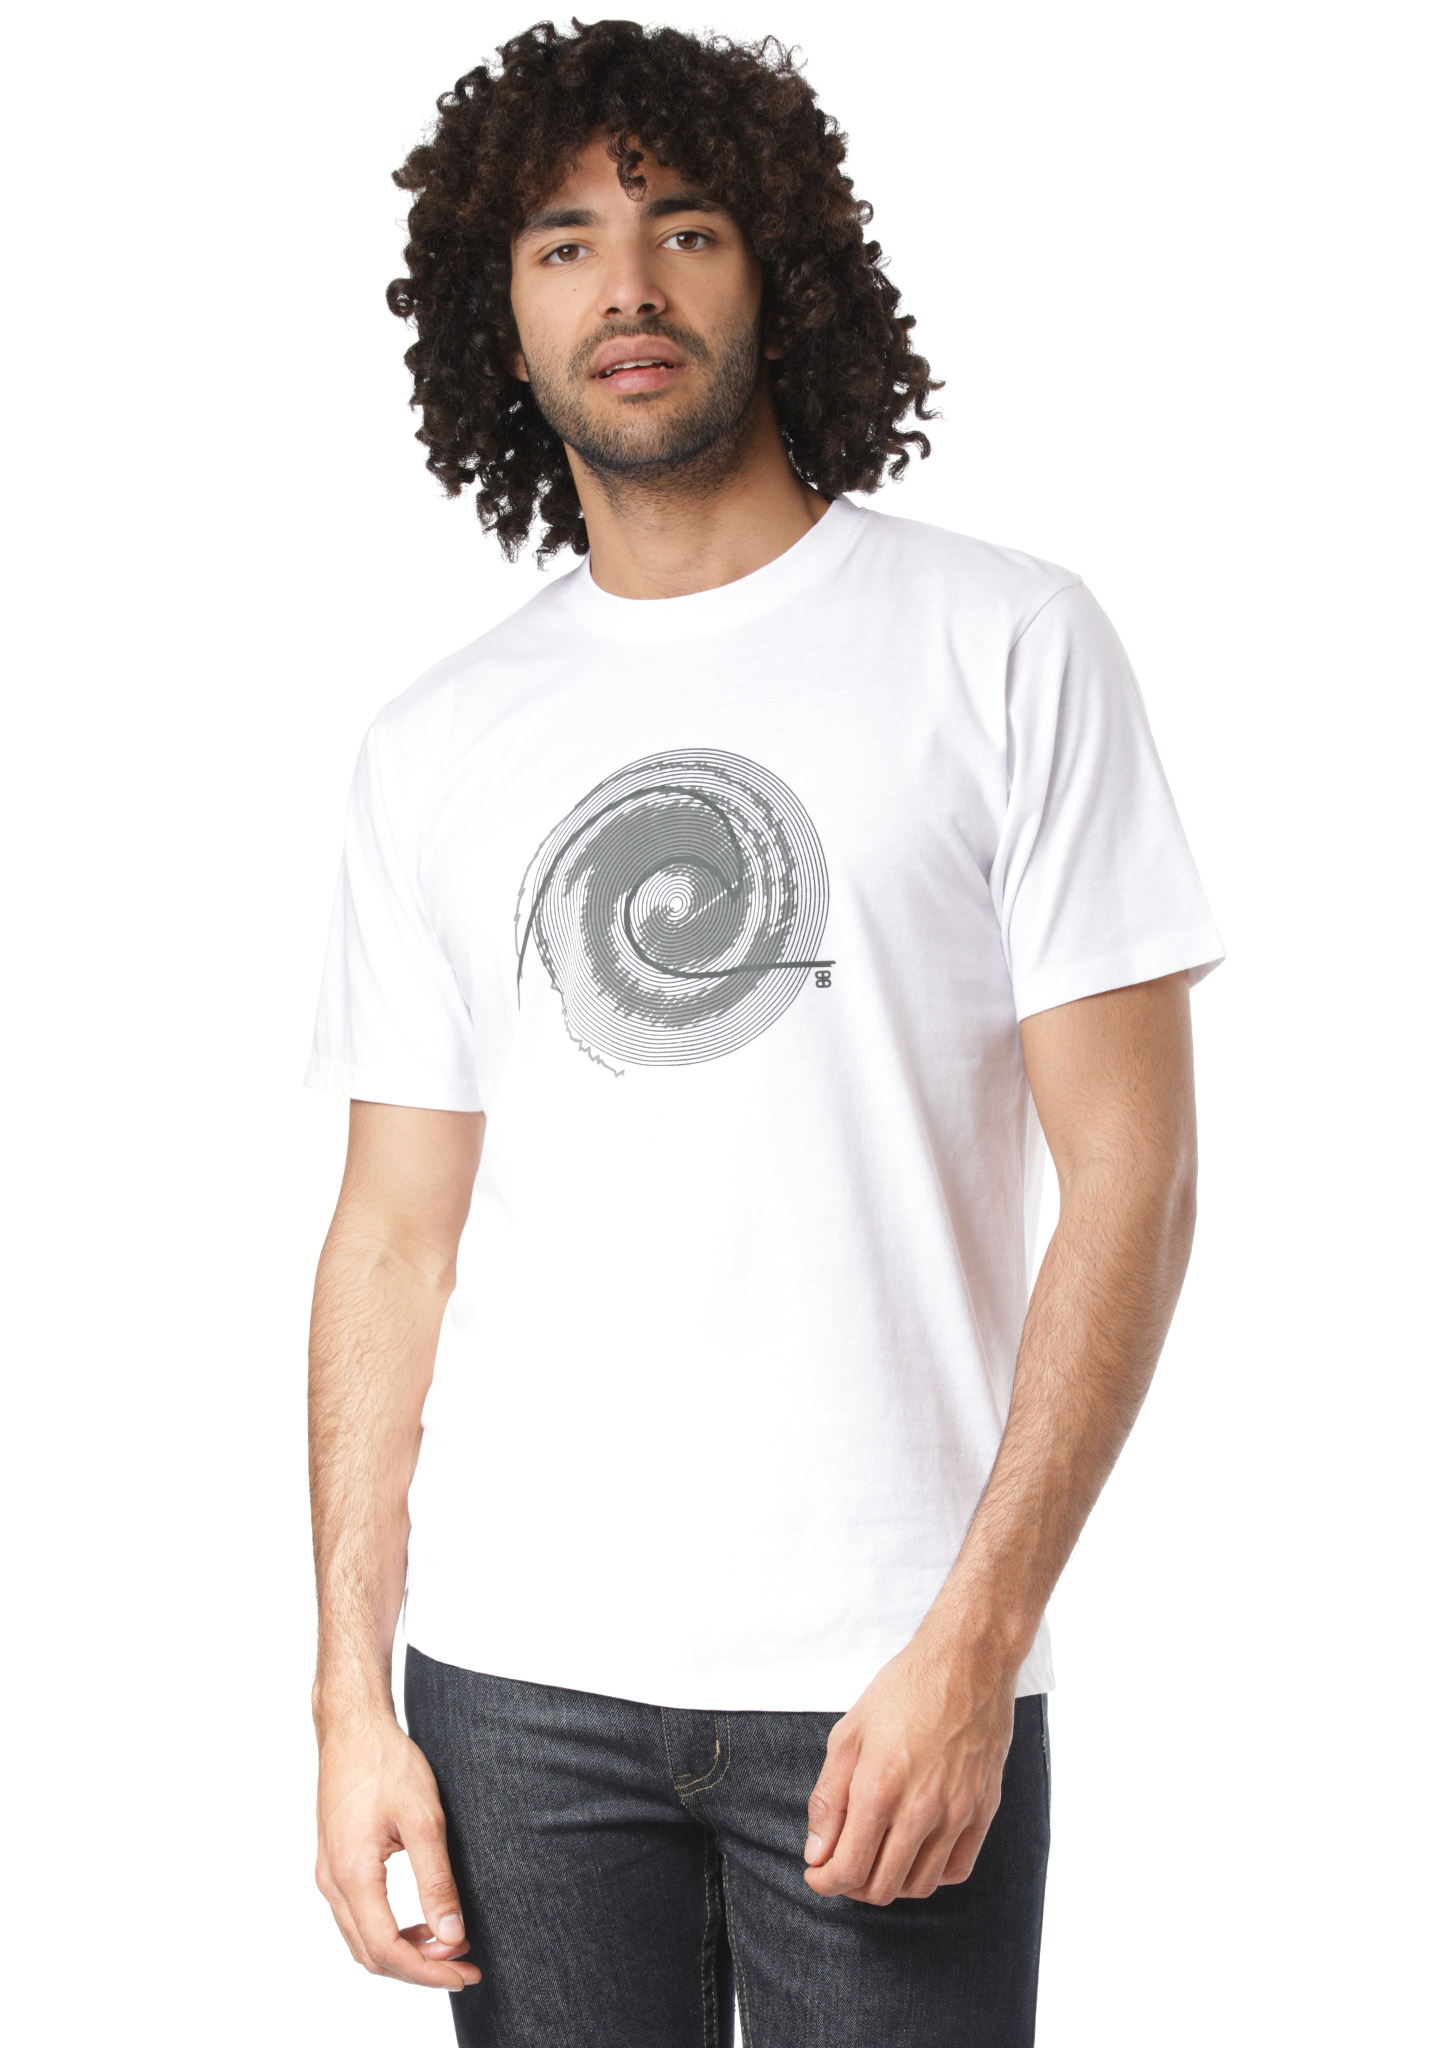 Planet Sports Sherman T-Shirt weiß S